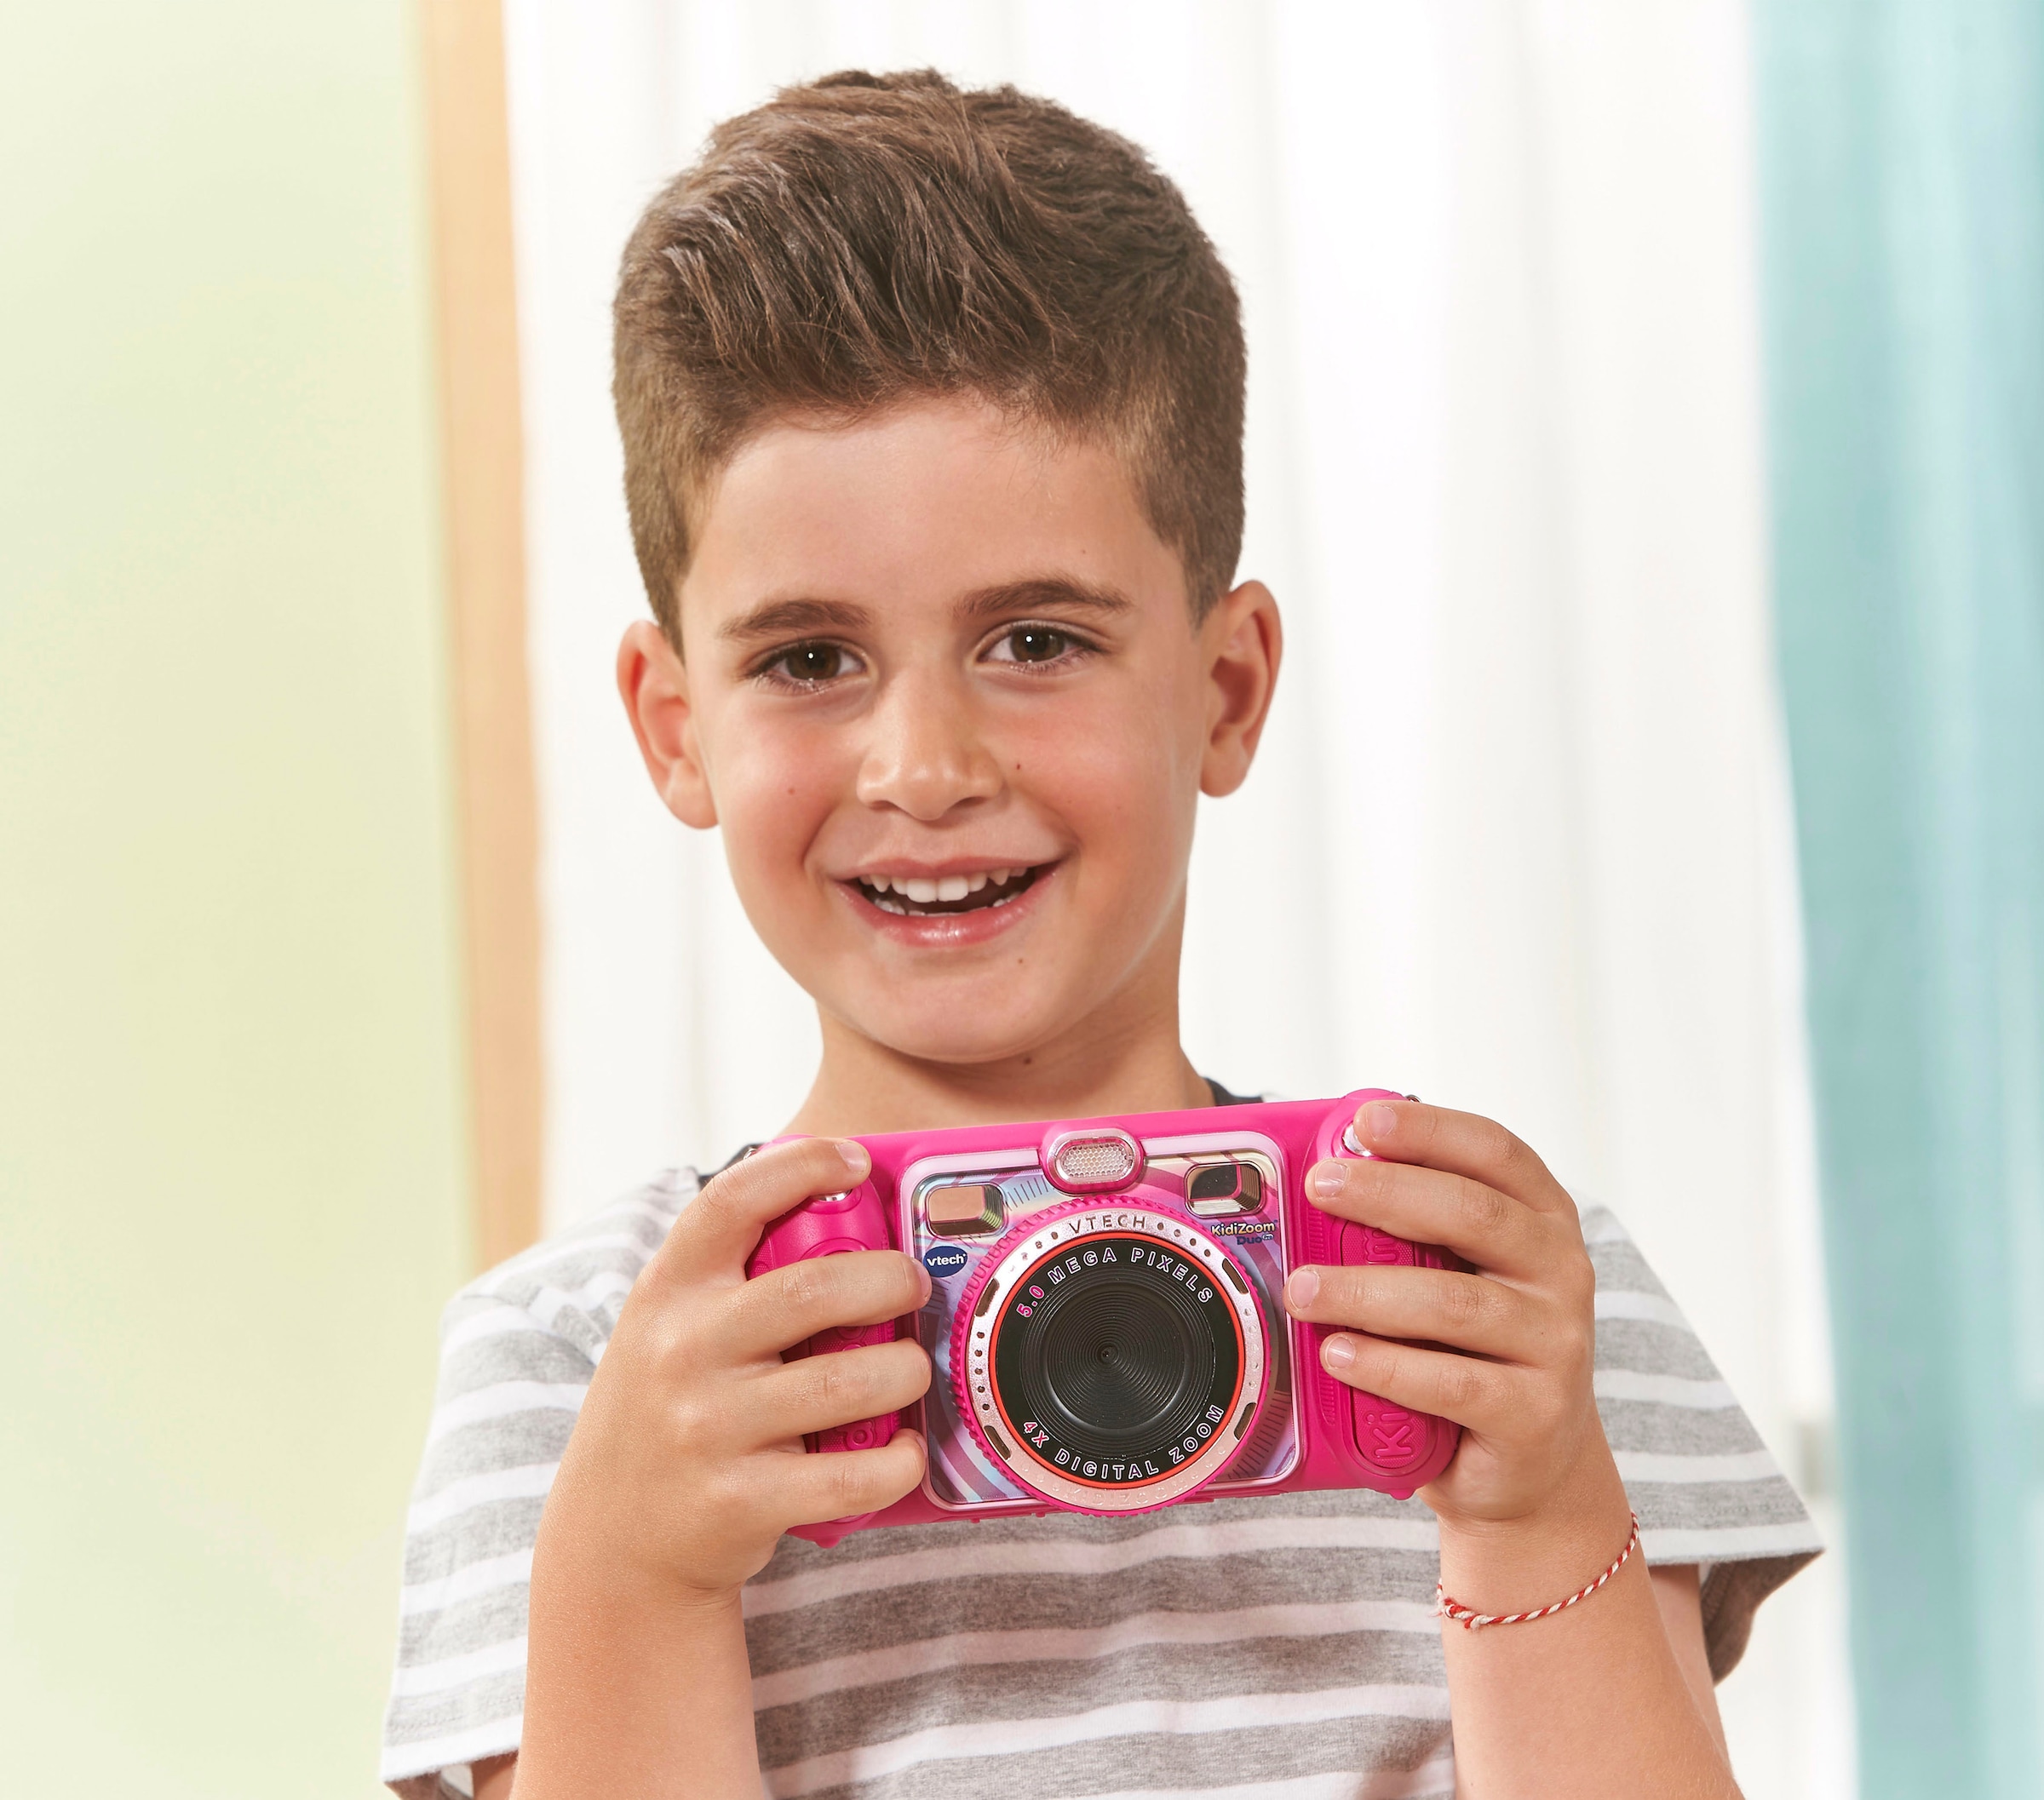 Vtech® KidiZoom Duo Pro, pink Kinderkamera (inklusive Tragetasche